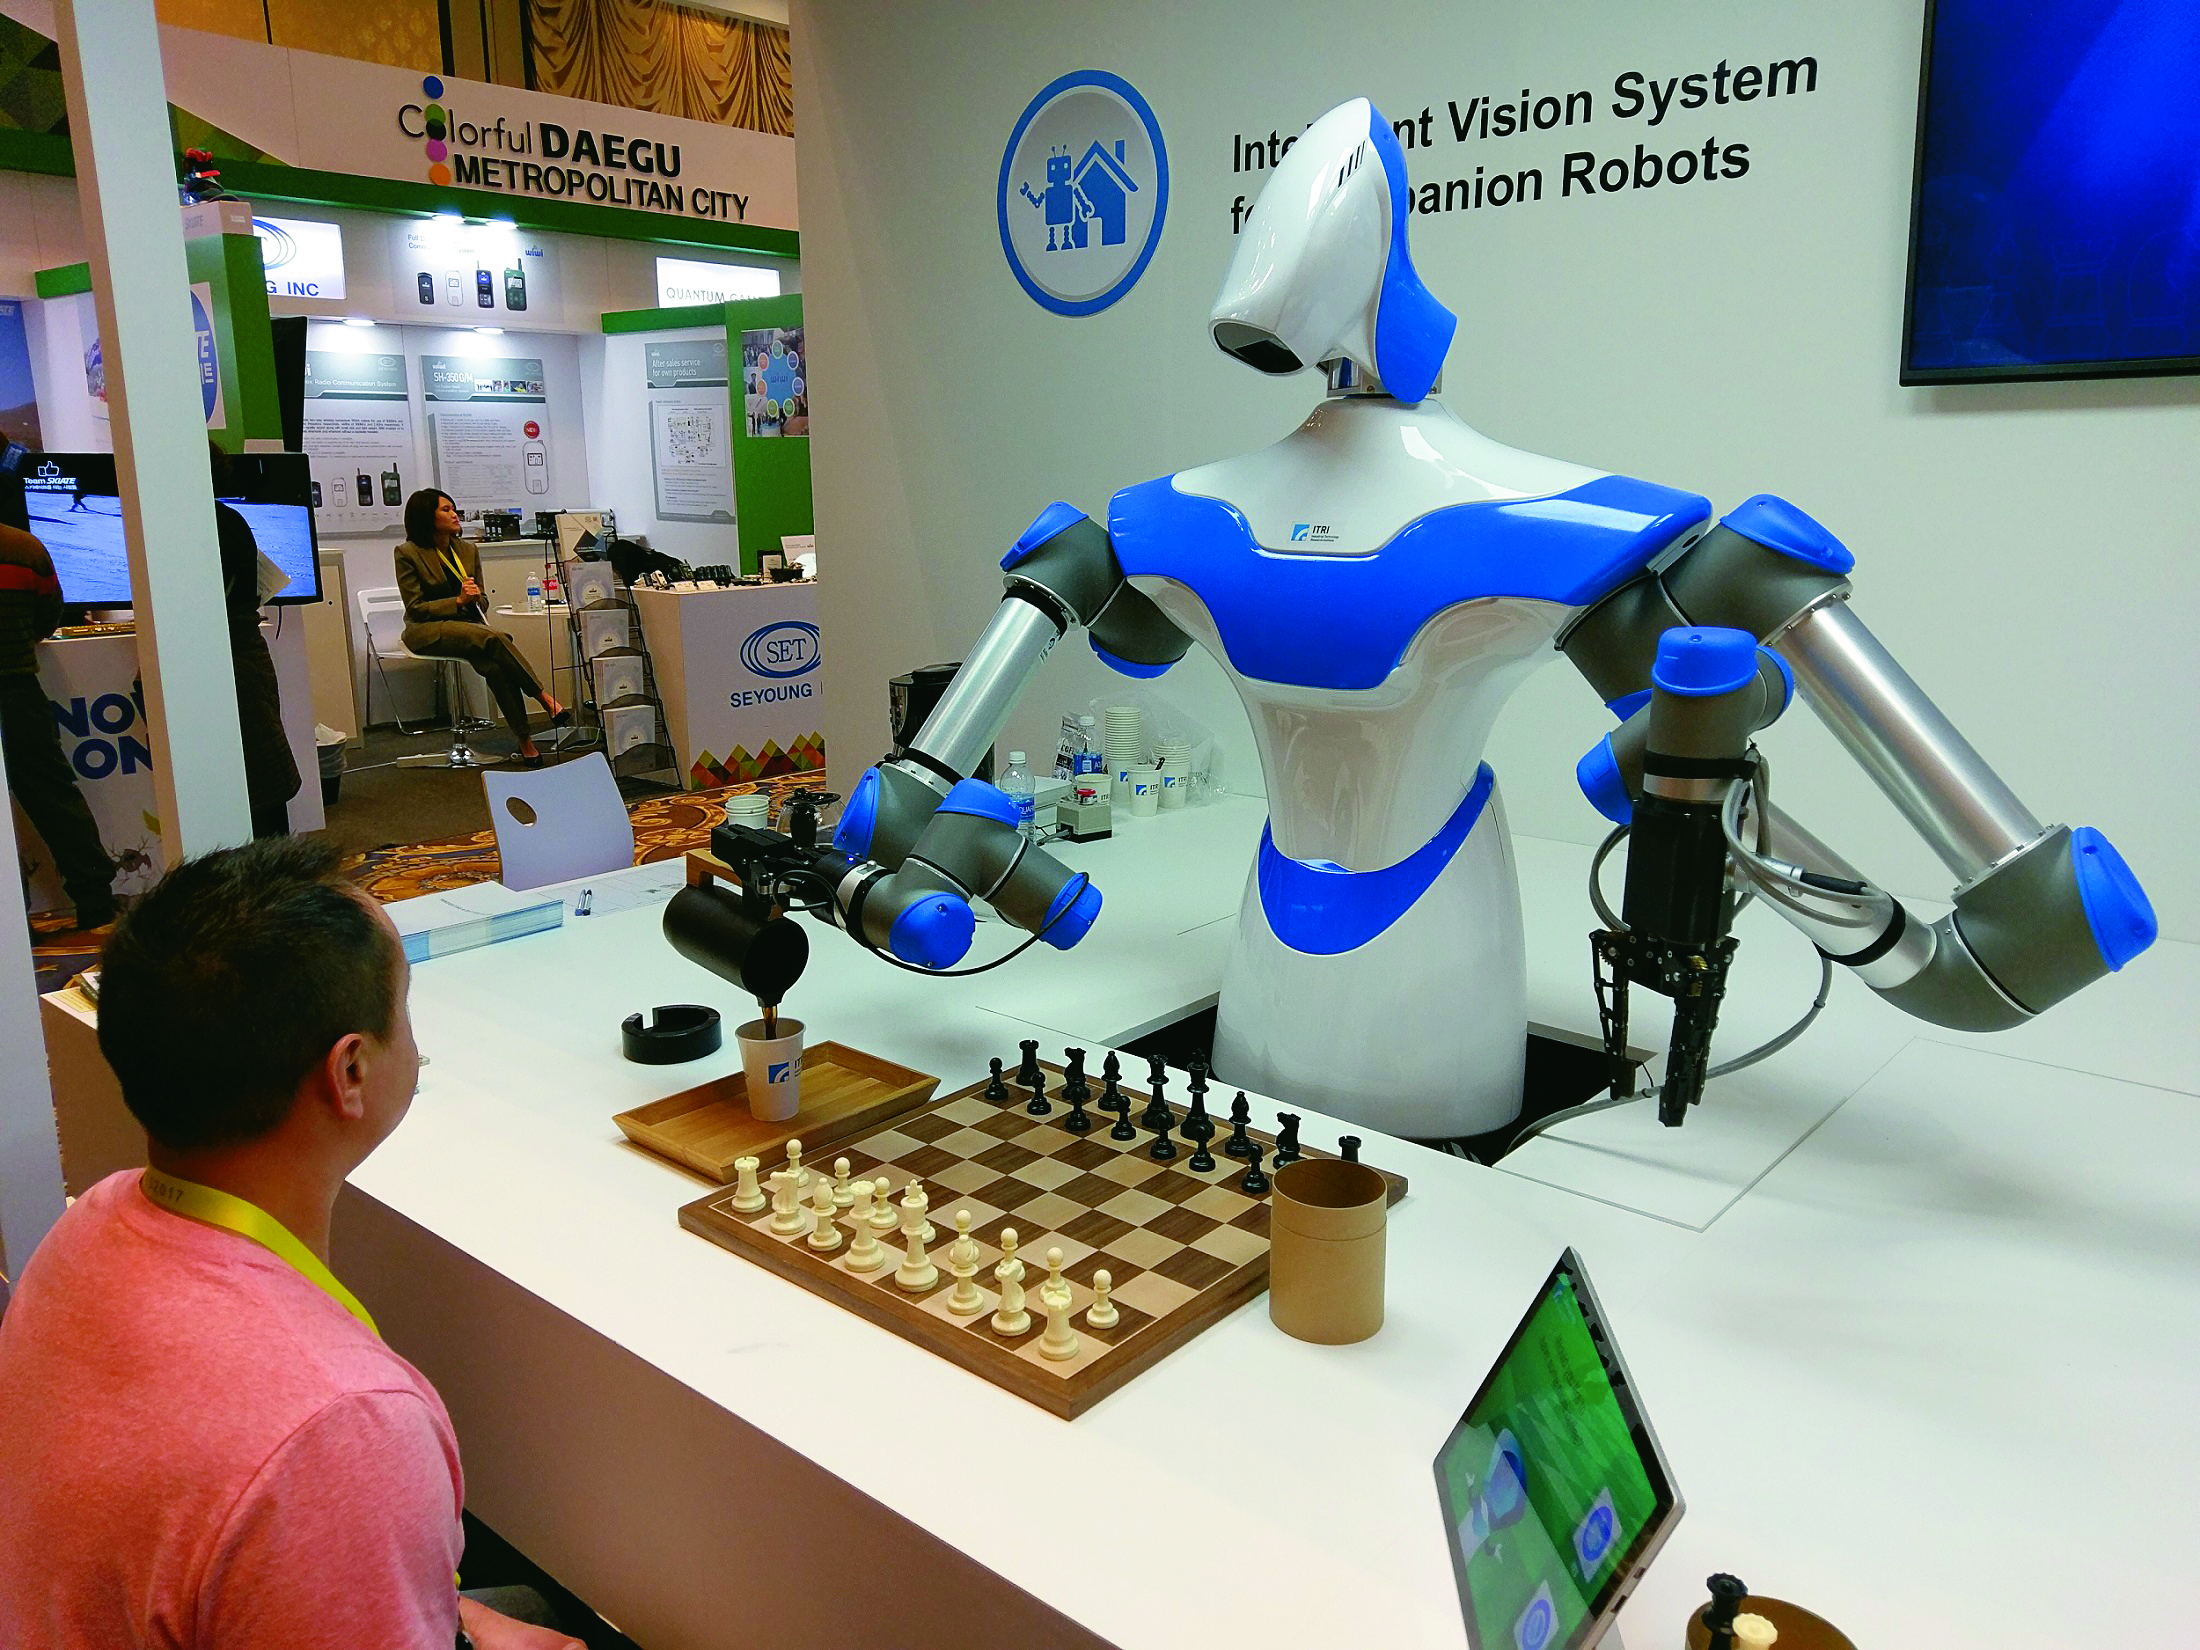 在生活中，有各種不同應用 AI 的智慧機器人，不只能夠理解人類的表達、還可與人互動，圖為工研院所研發之「智慧視覺機器人系統」。